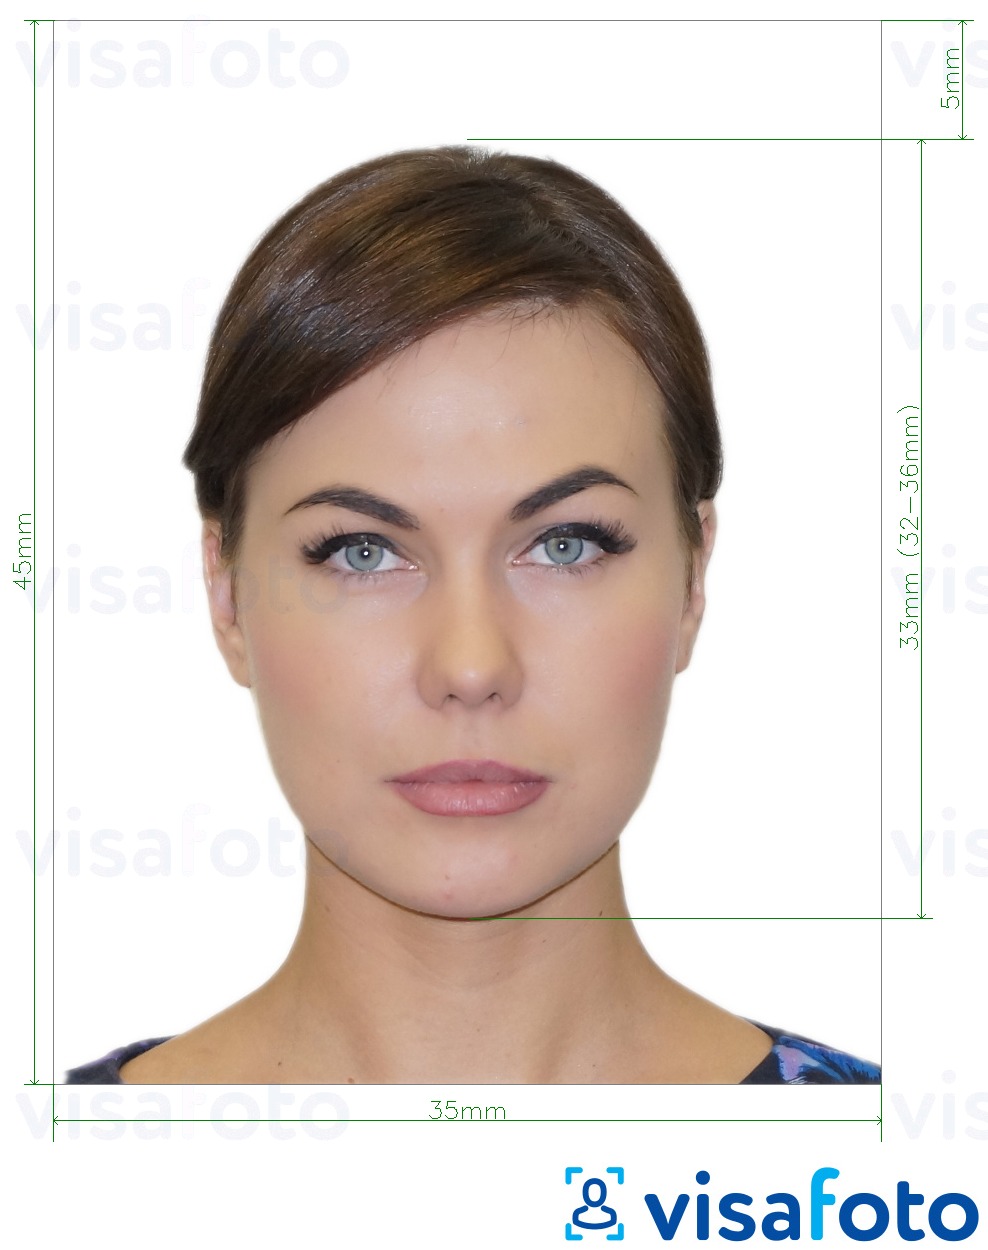 Exemplo de foto para Fan ID russo  pixels com especificação exata de dimensão